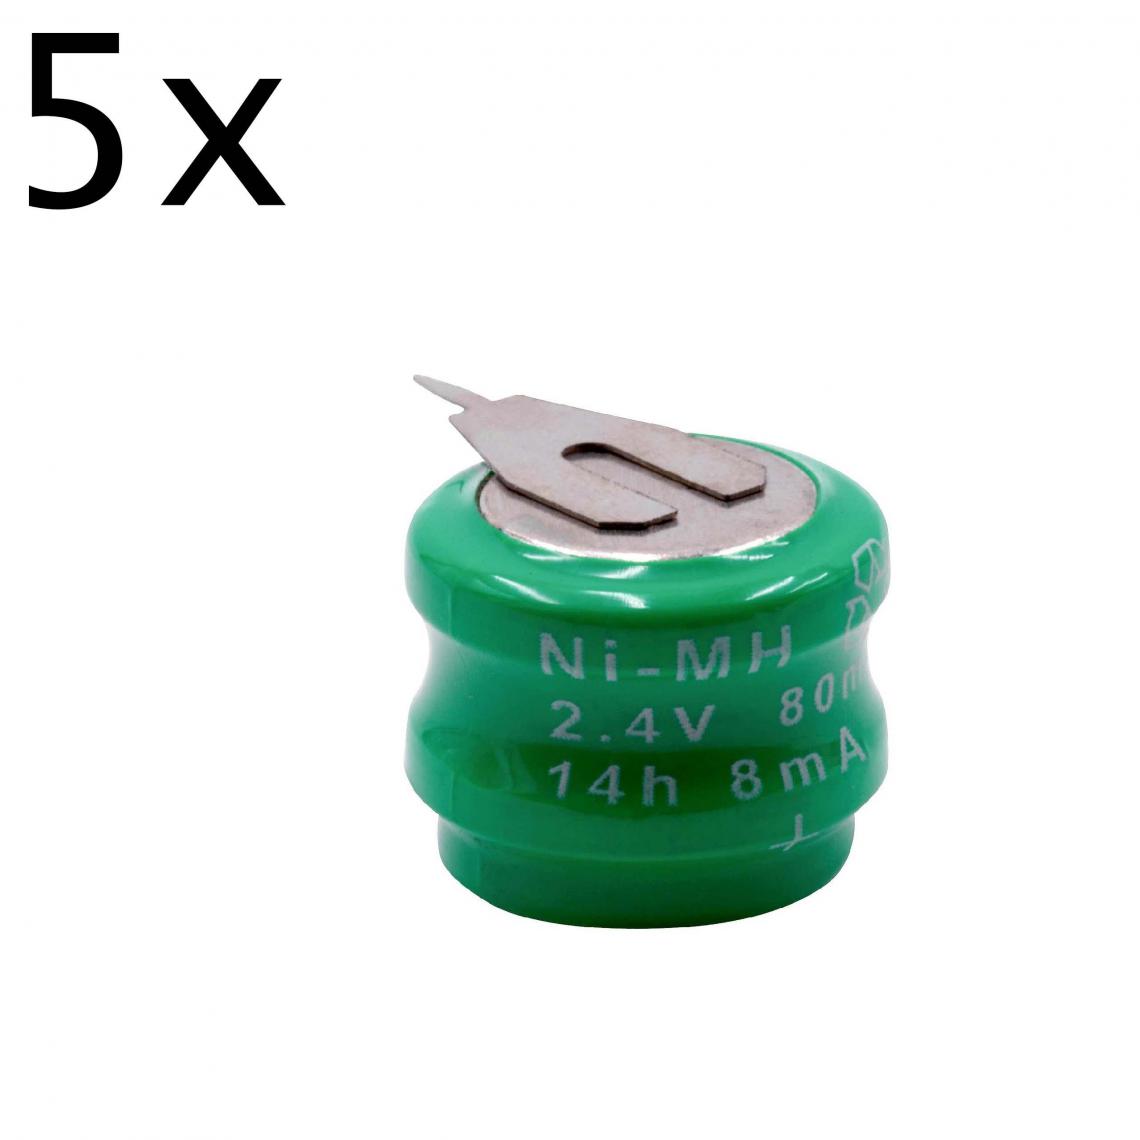 Vhbw - vhbw 5x NiMH pile bouton de remplacement pour type V80H 2 épingles 80mAh 2,4V convient pour les batteries de modélisme etc. - Autre appareil de mesure